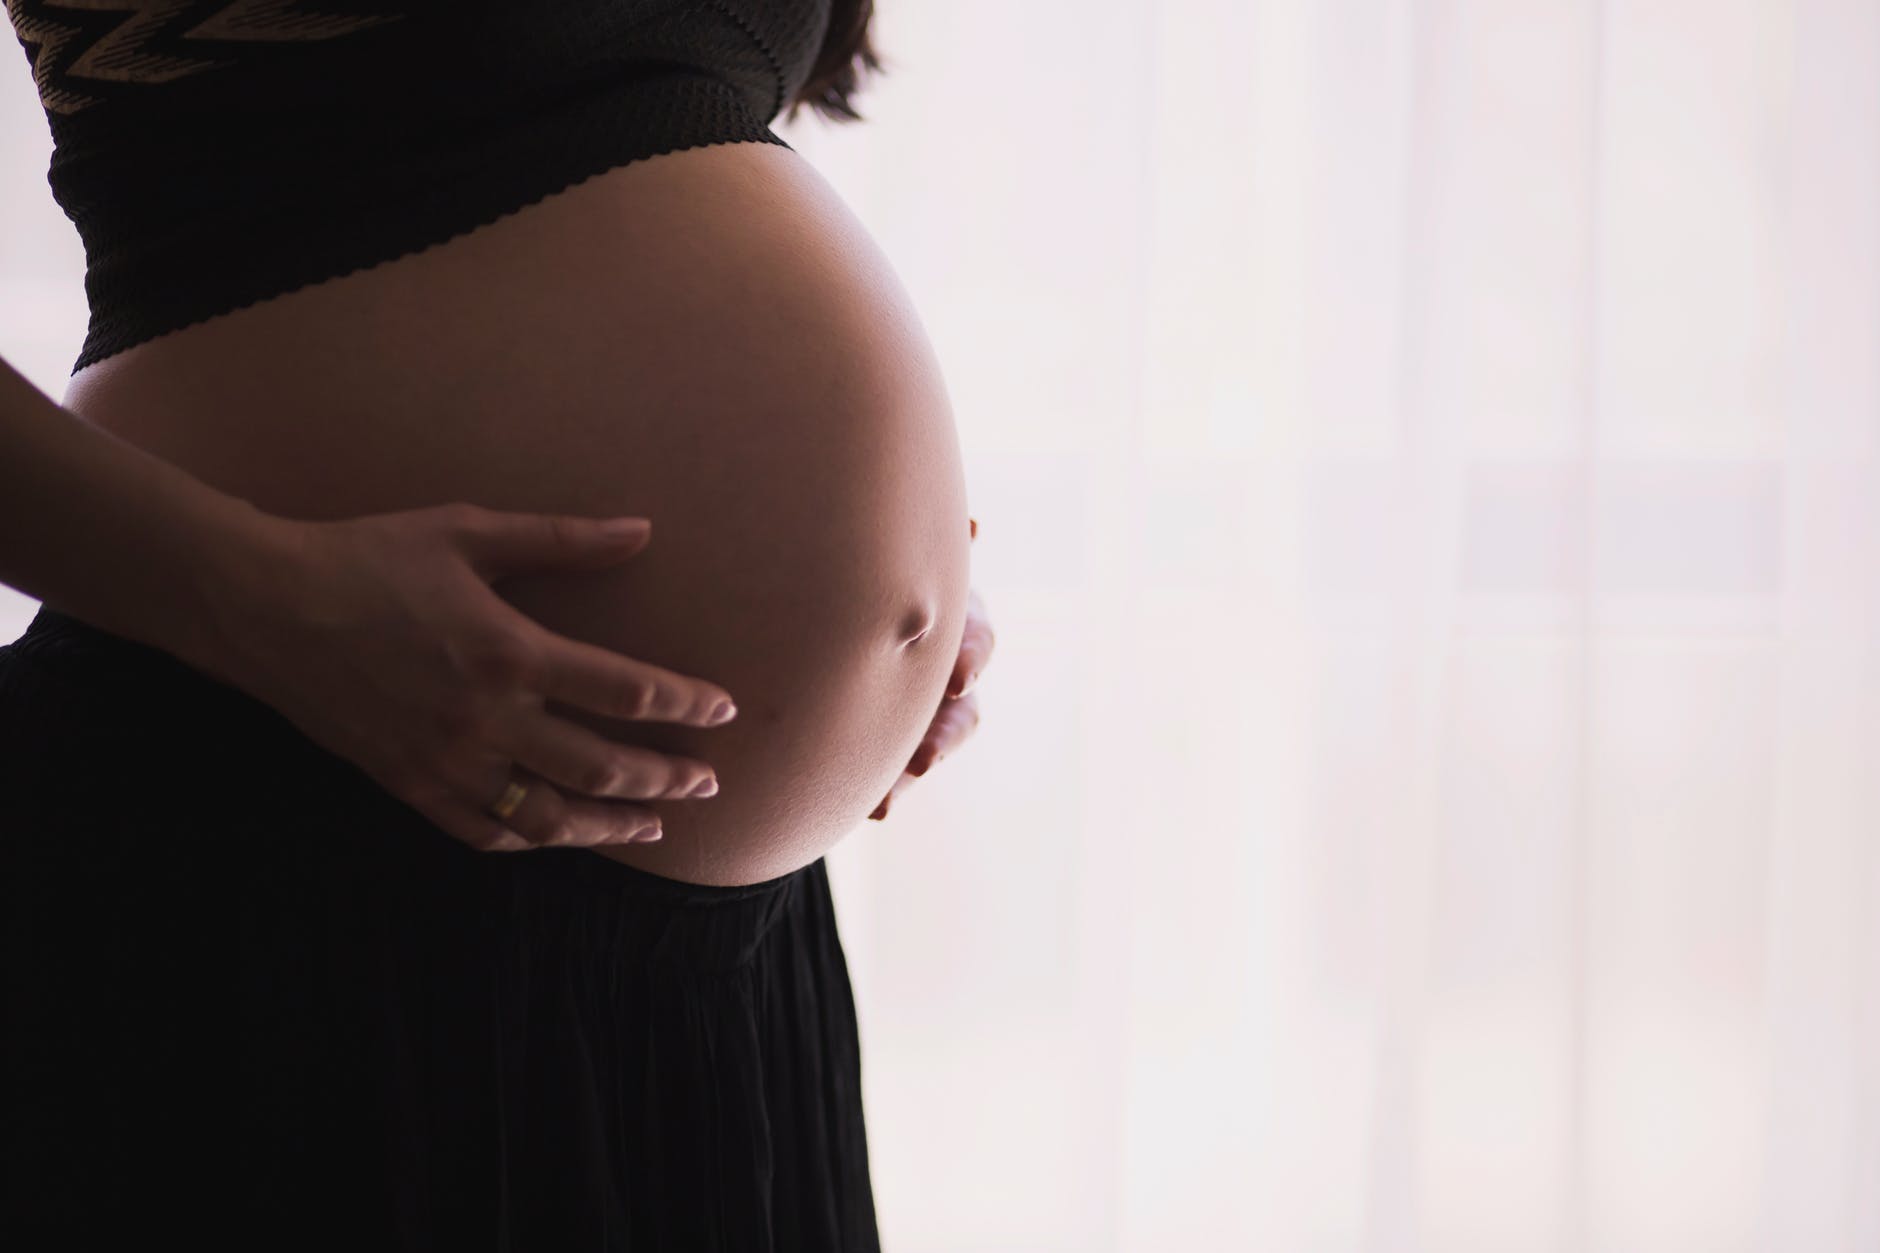 Tribunal autorizó a ginecóloga realizar cesárea en contra de la voluntad de una mujer gestante